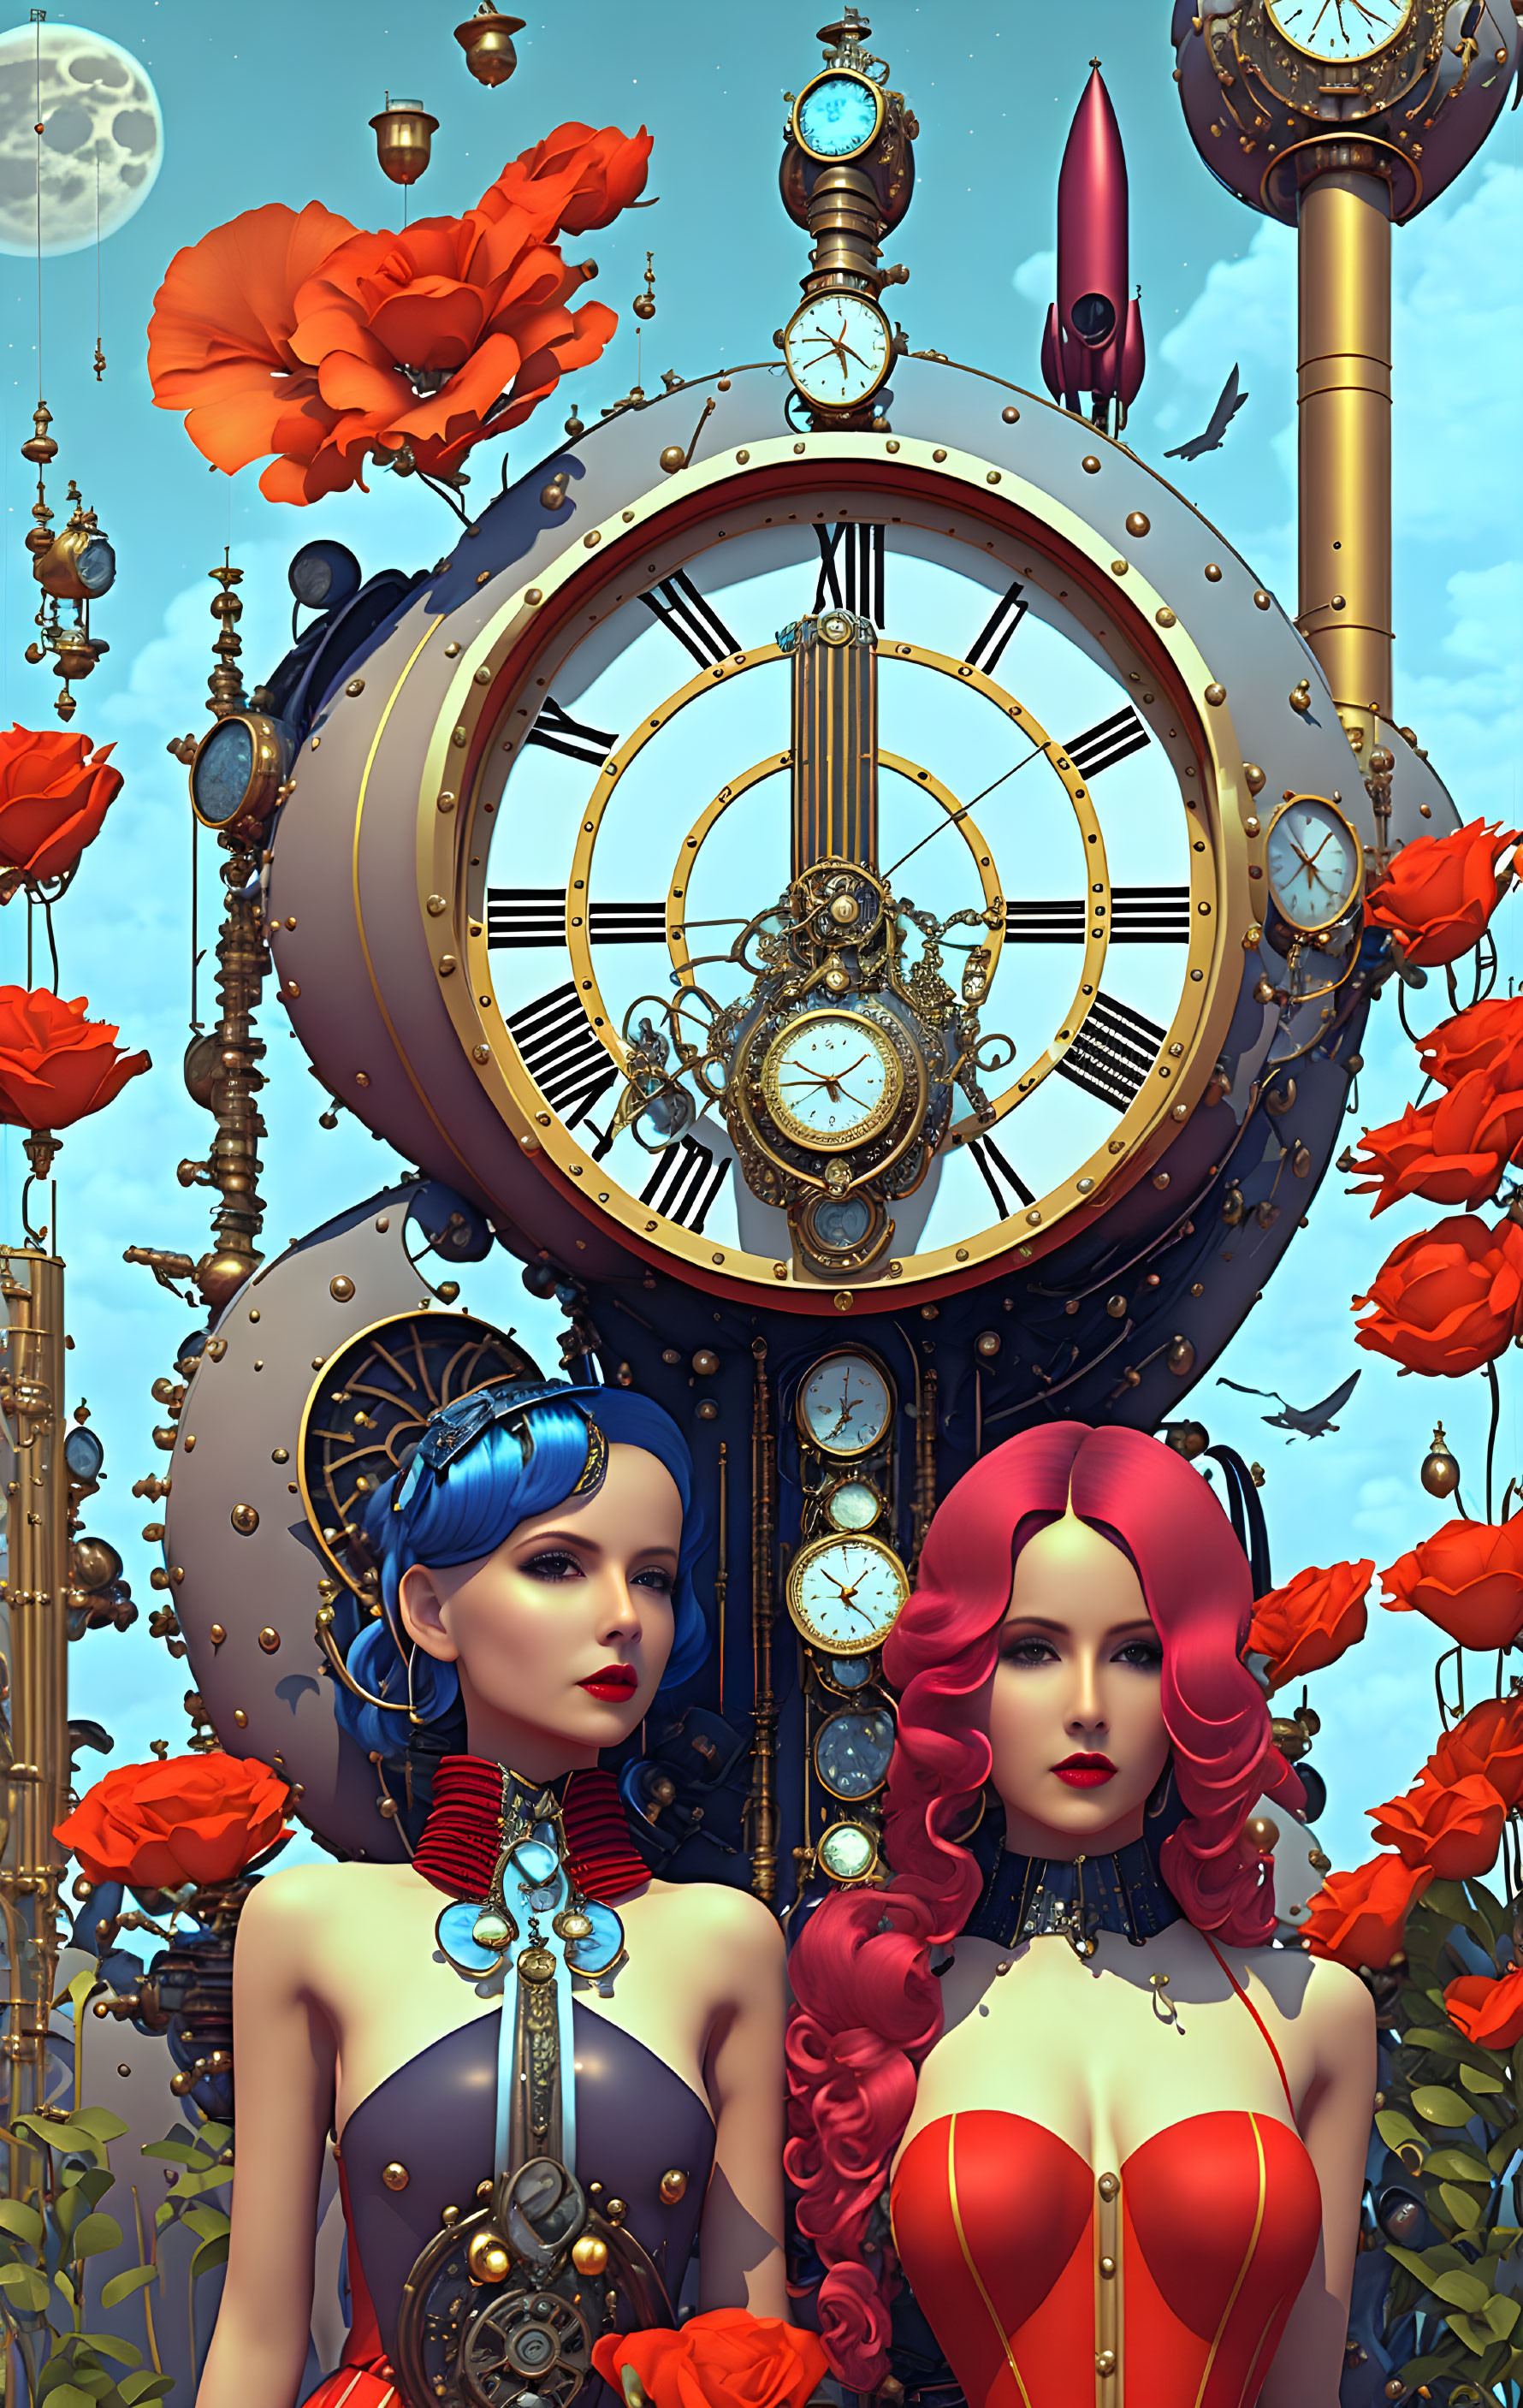 Two Women in Futuristic Victorian Attire by Large Ornate Clock